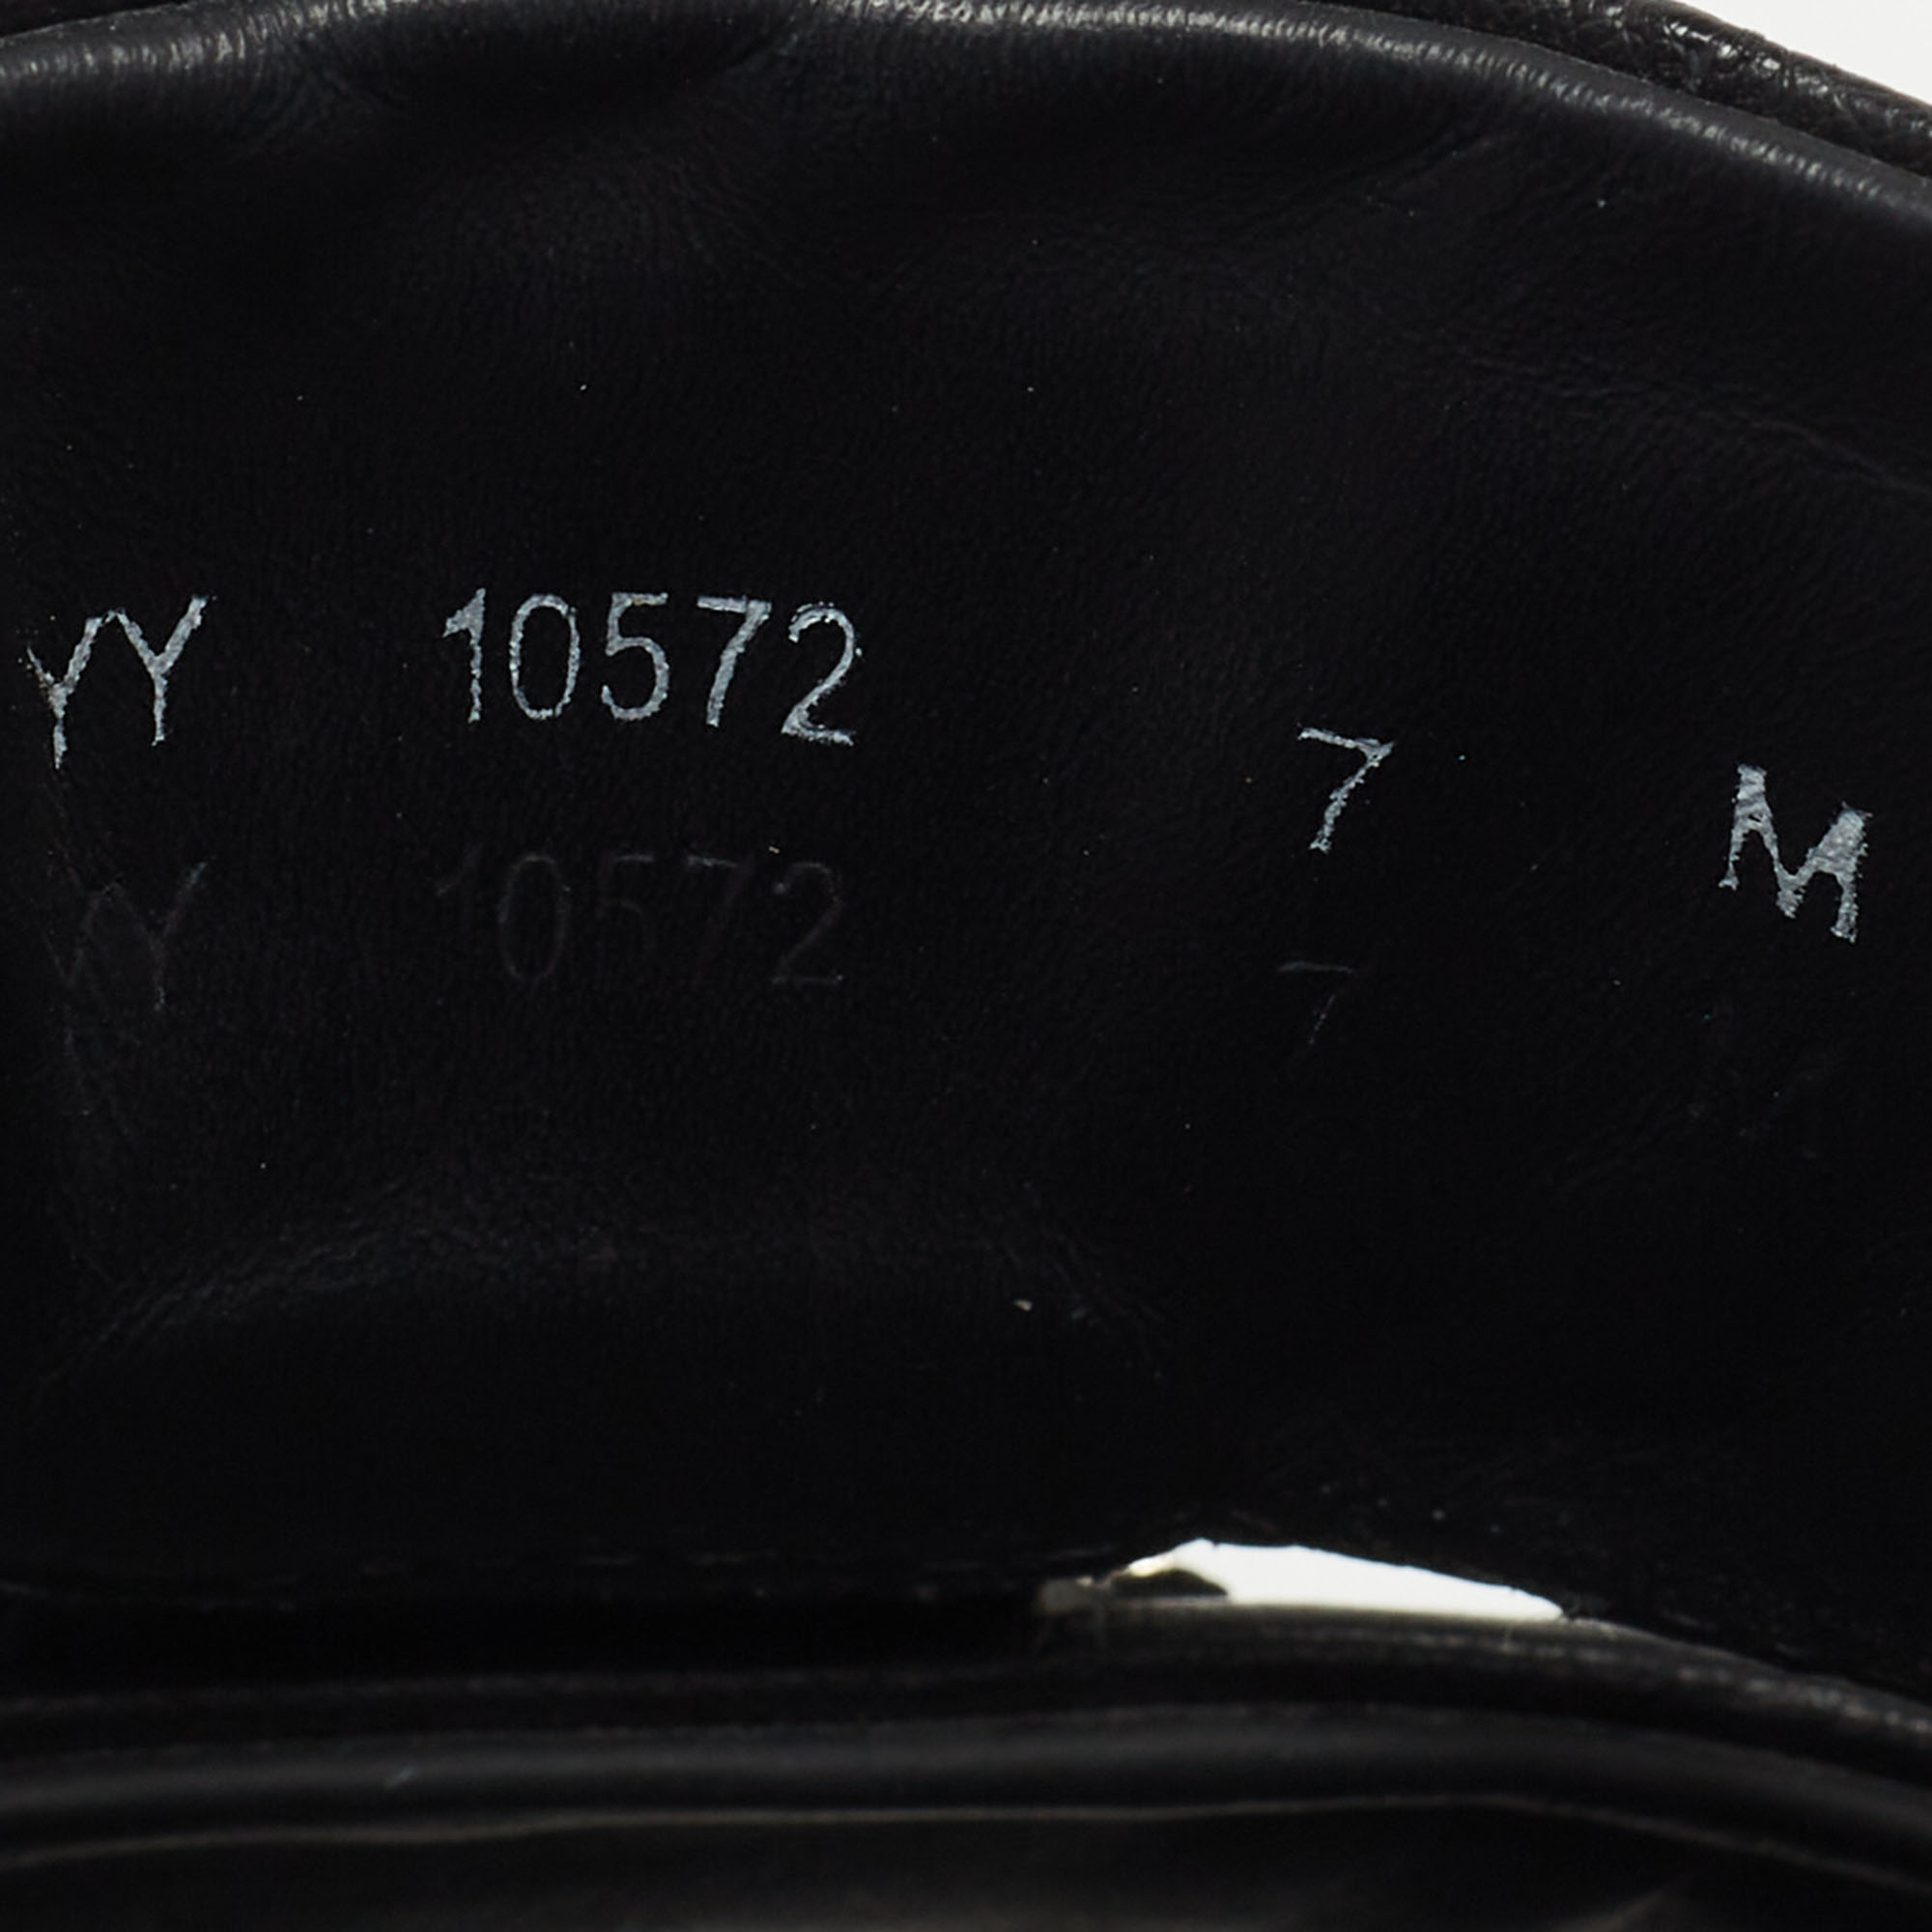 Salvatore Ferragamo Black Ostrich Leather Lufti Buckle Detail Slide Sandals Size 41